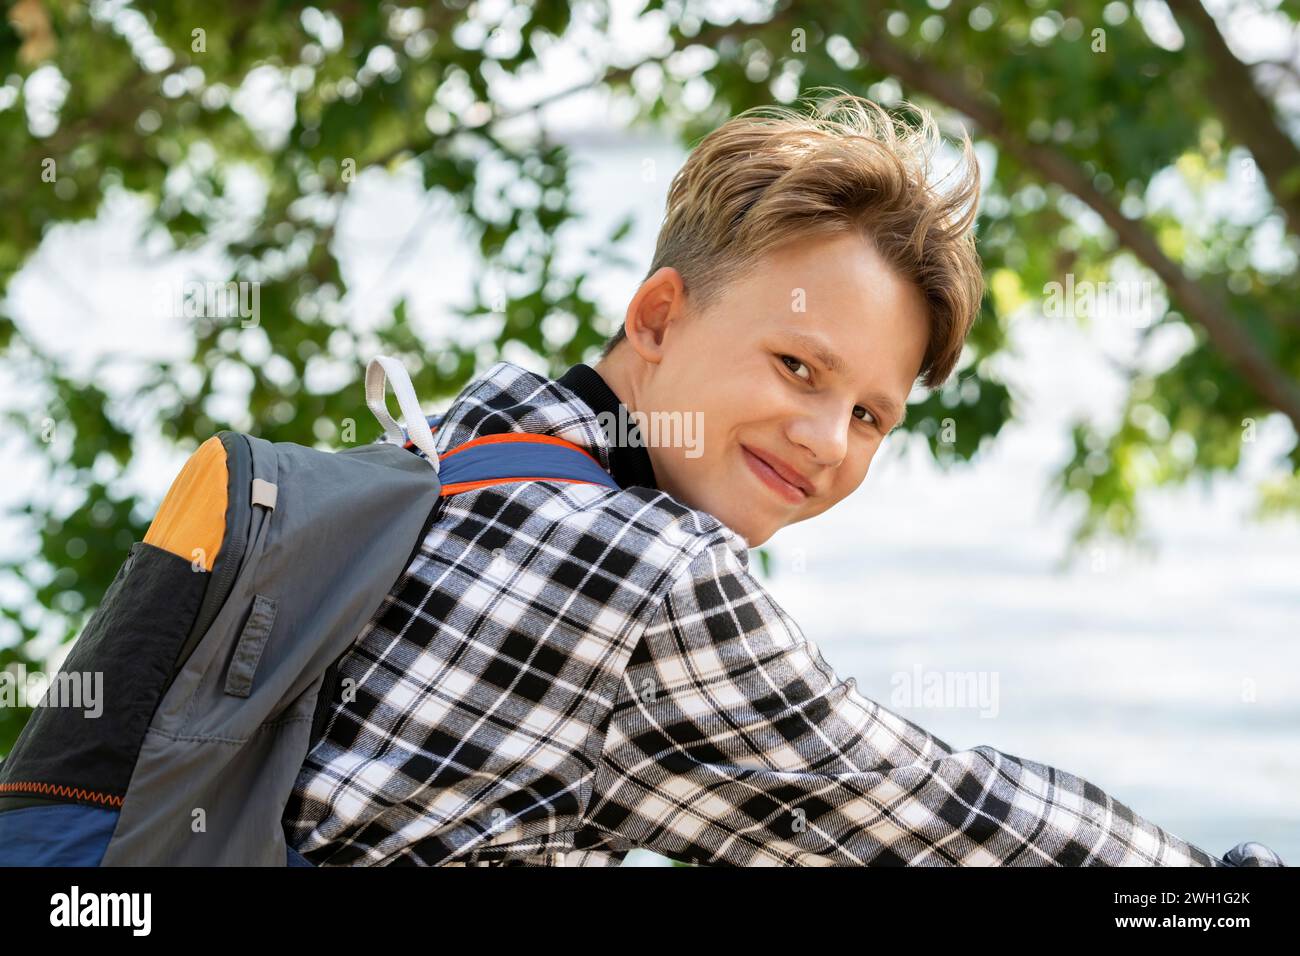 Porträt eines lächelnden Jungen mit blonden Haaren im karierten Hemd mit Rucksack, der auf dem Fahrrad sitzt, auf verschwommenen Bäumen und reflektierendem Teichhintergrund am sonnigen Tag Stockfoto